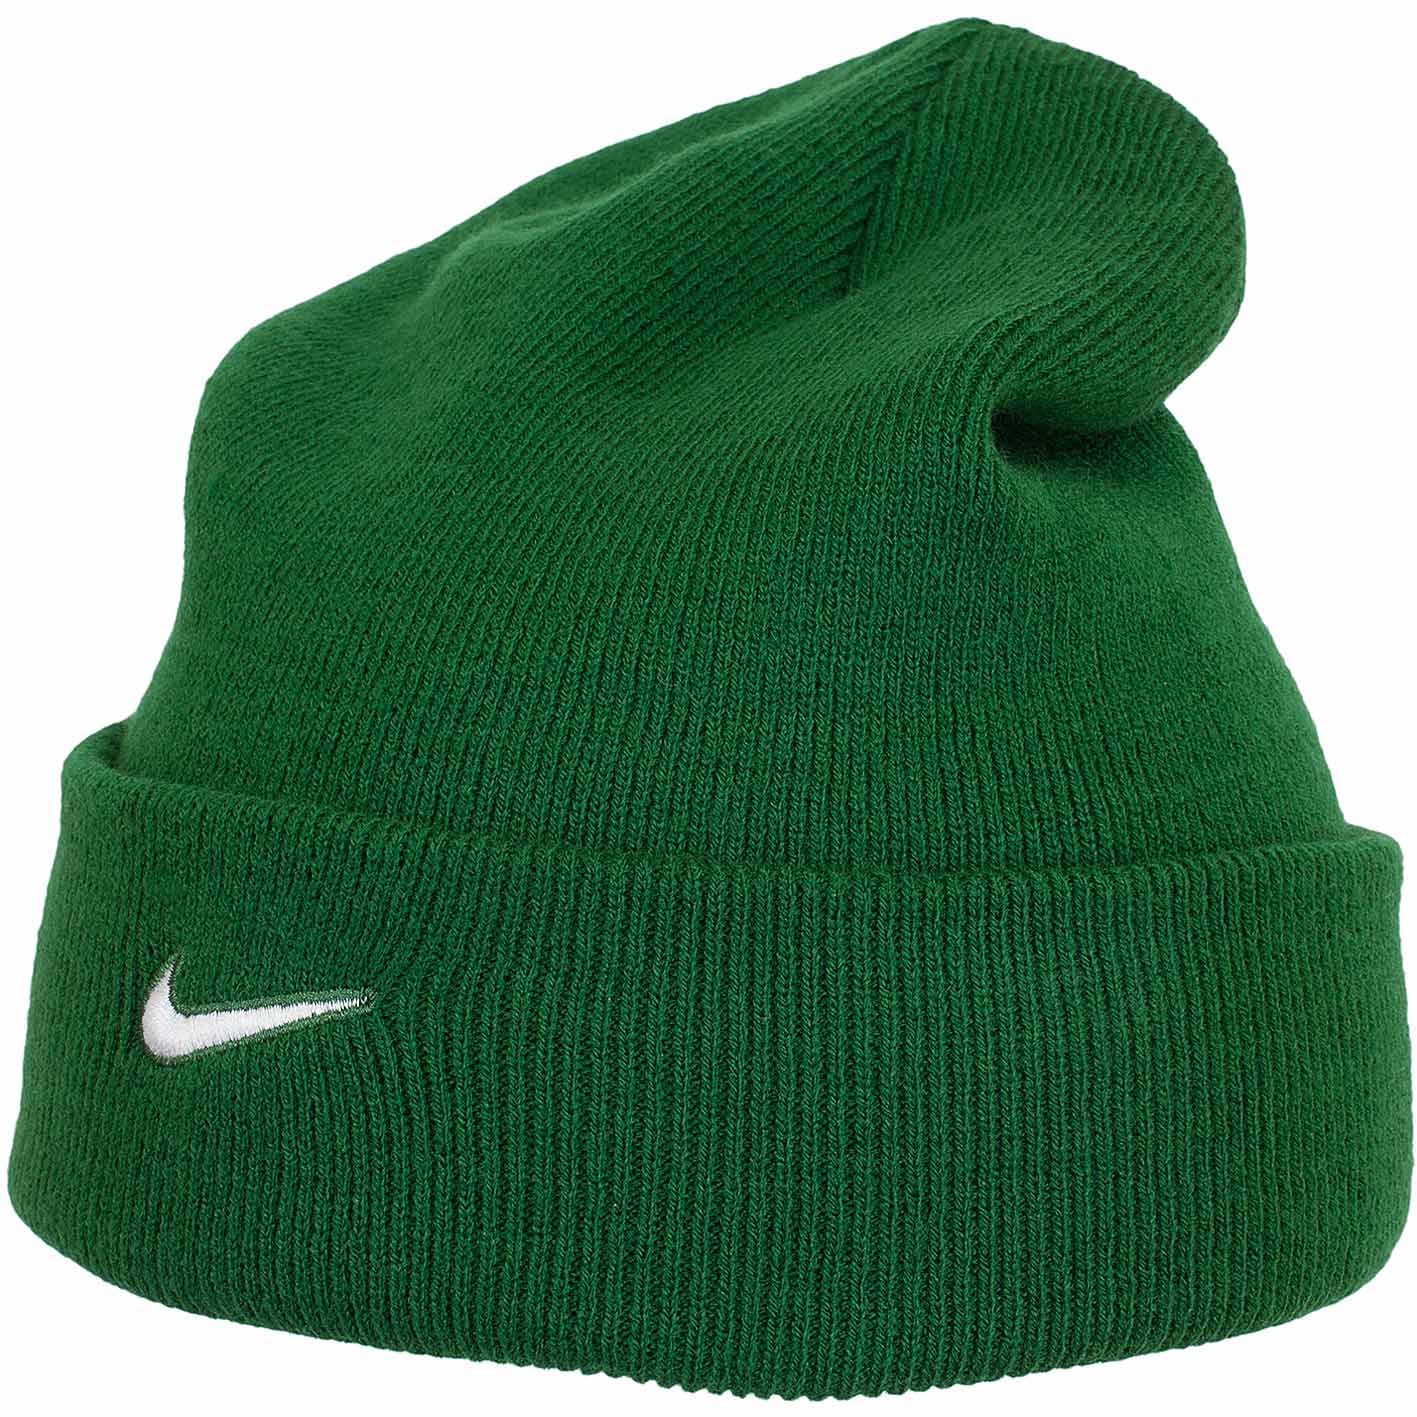 ☆ Nike Beanie Sideline grün/weiß - hier bestellen!